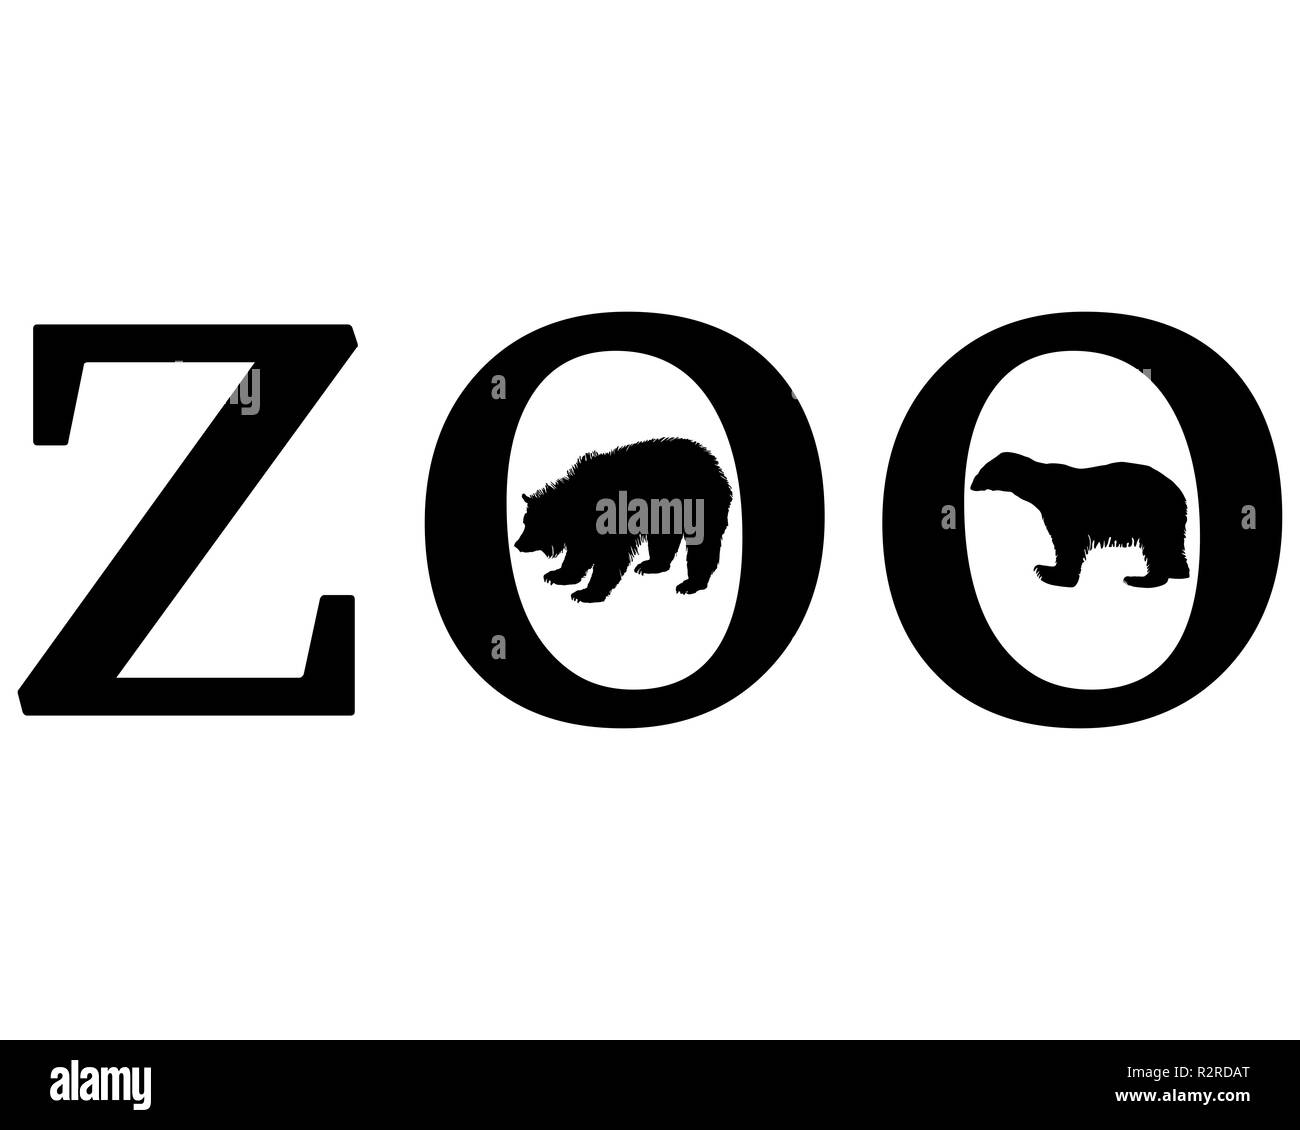 animaux de zoo Banque D'Images